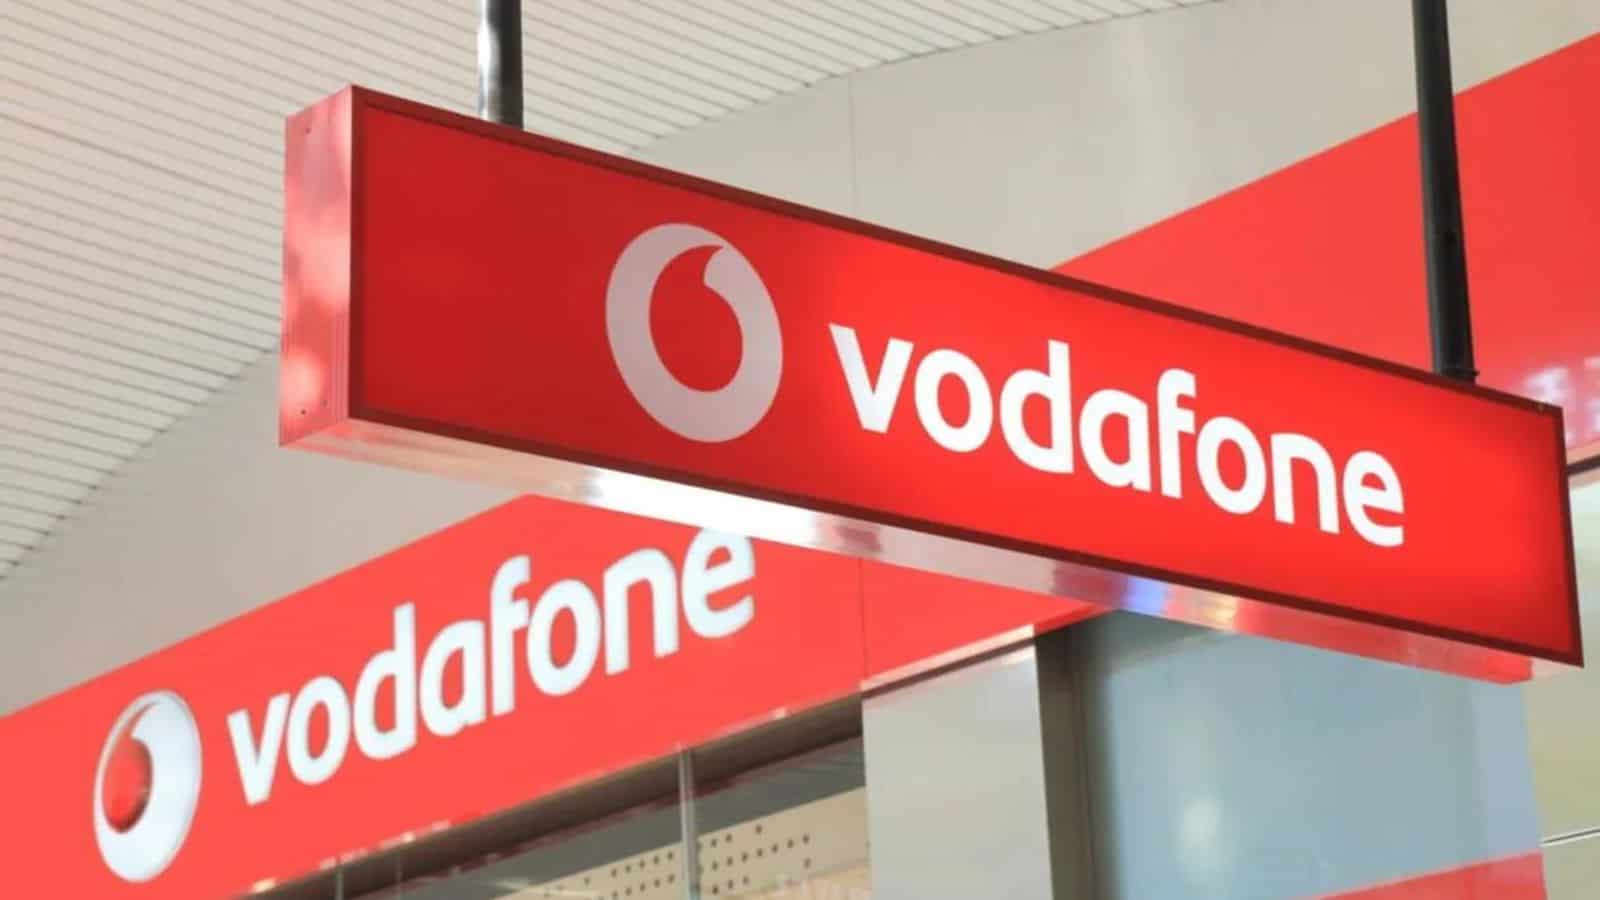 Vodafone, le SILVER sono due e piene di GIGA: eccone 200